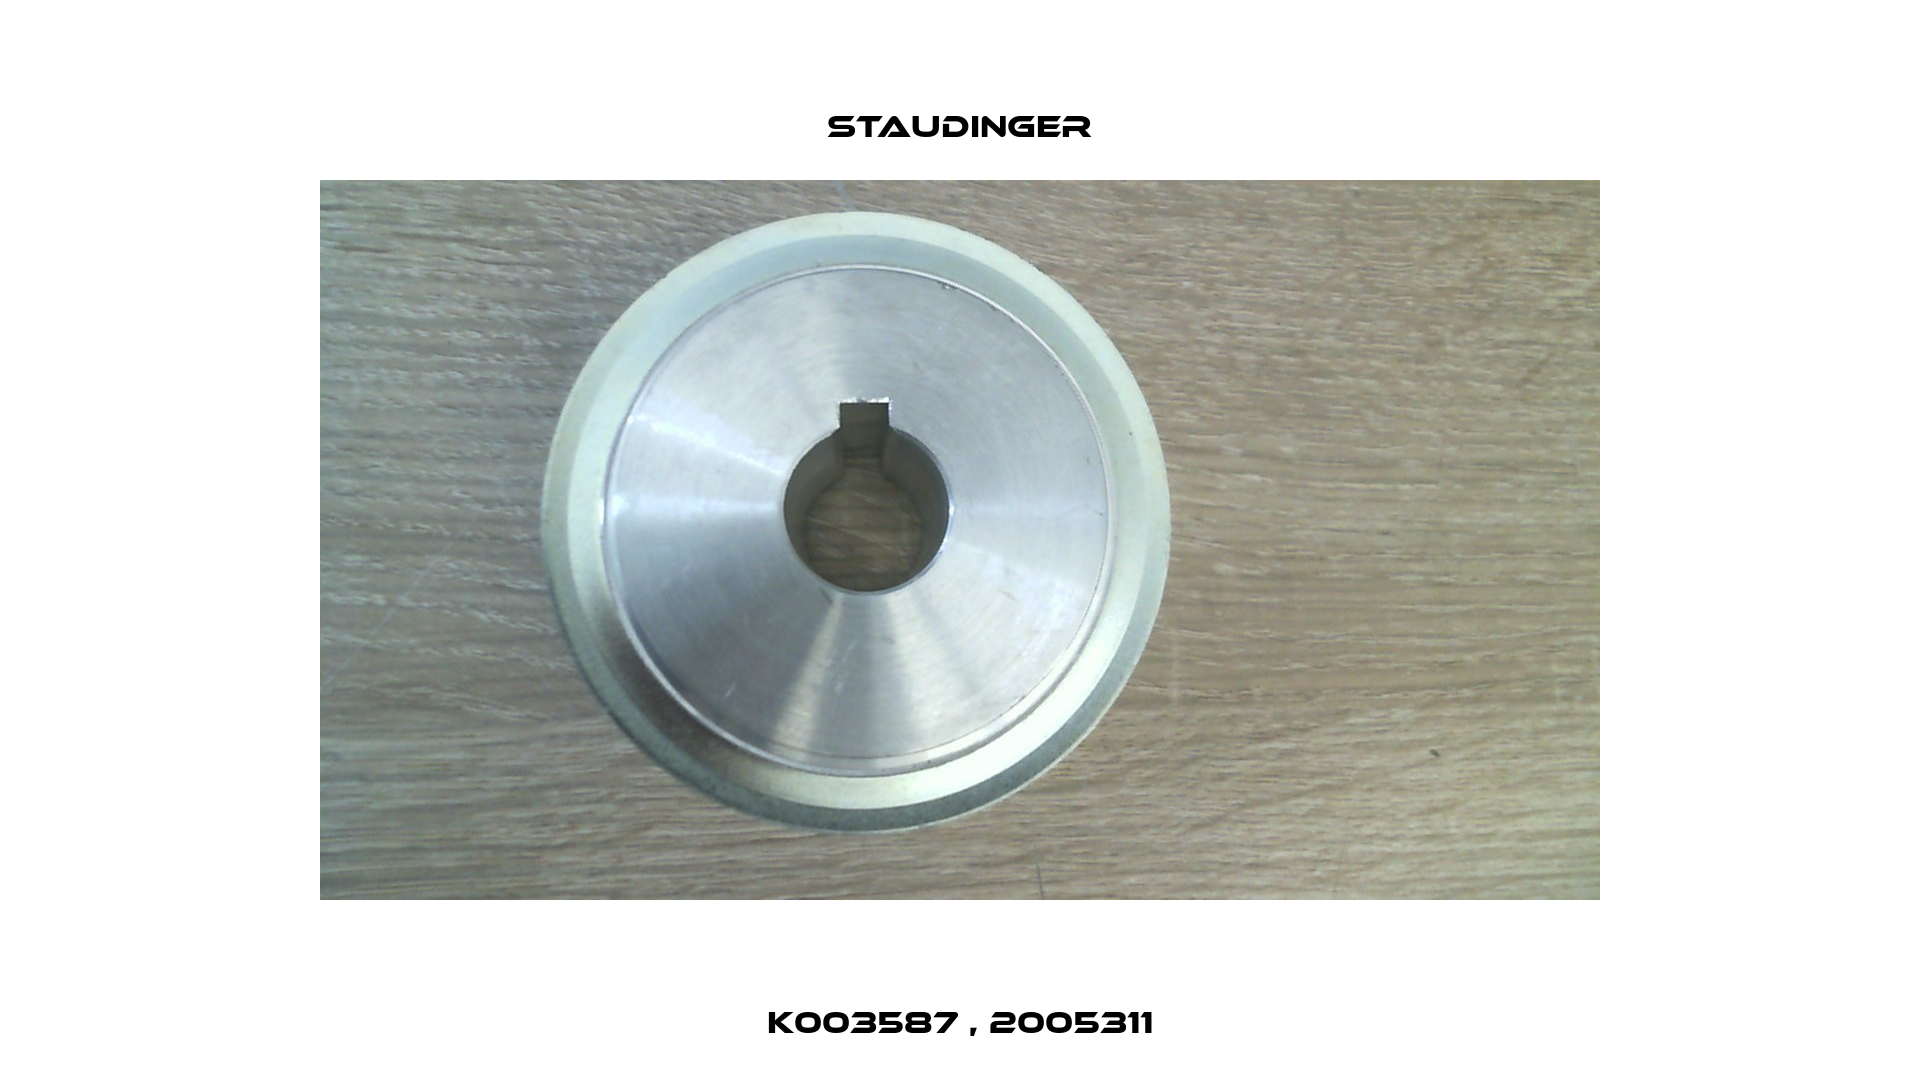 K003587 , 2005311 Staudinger